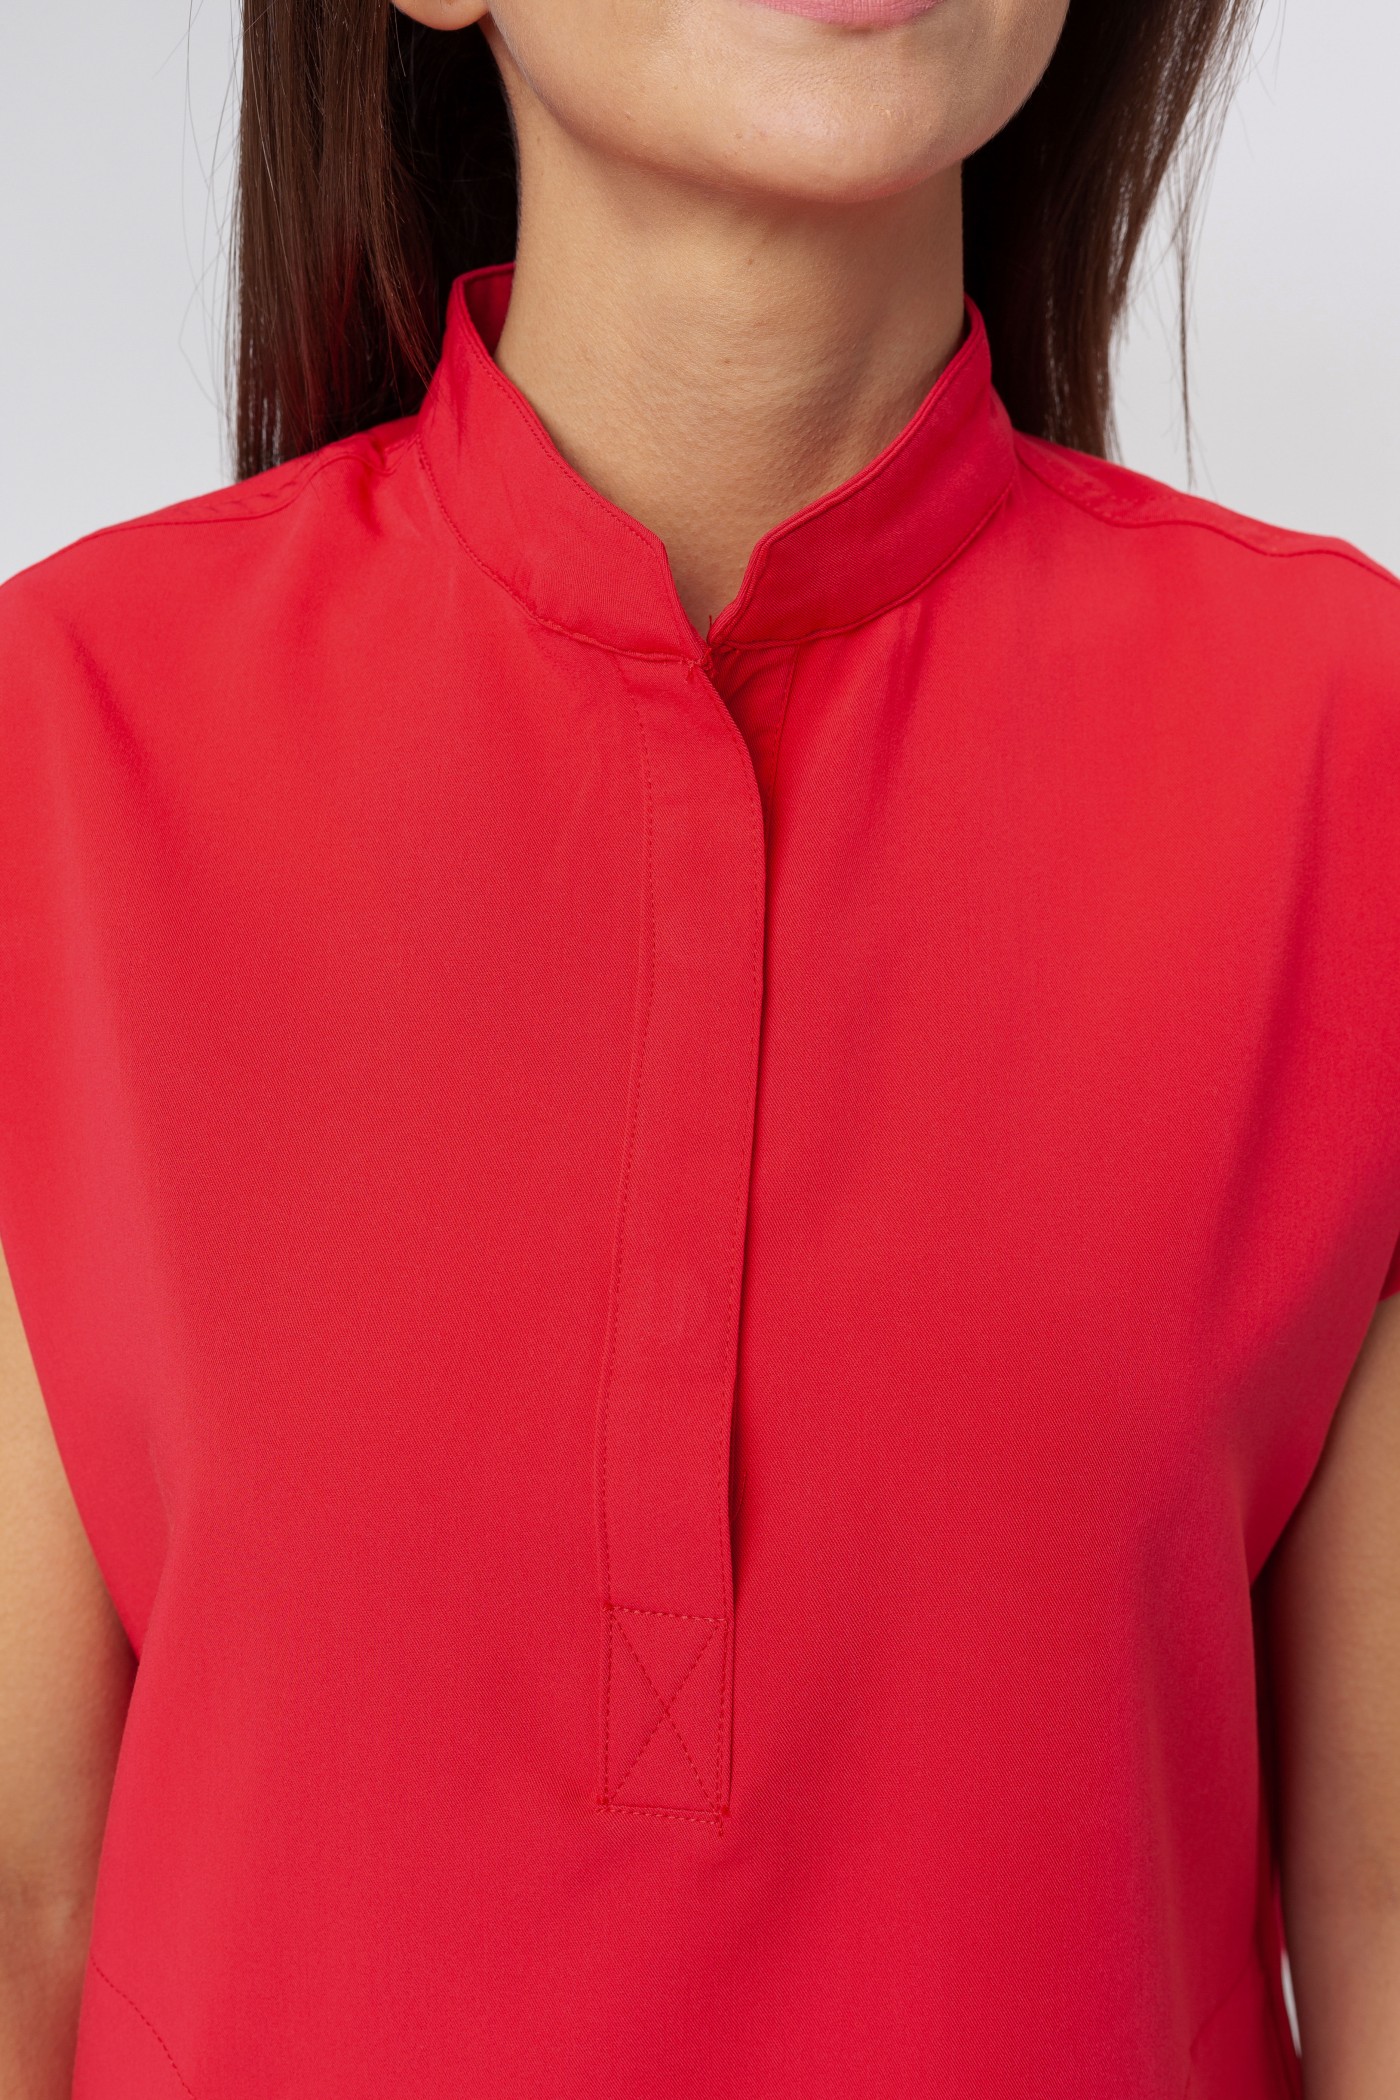 Komplet medyczny damski Uniforms World 518GTK™ Avant czerwony-5